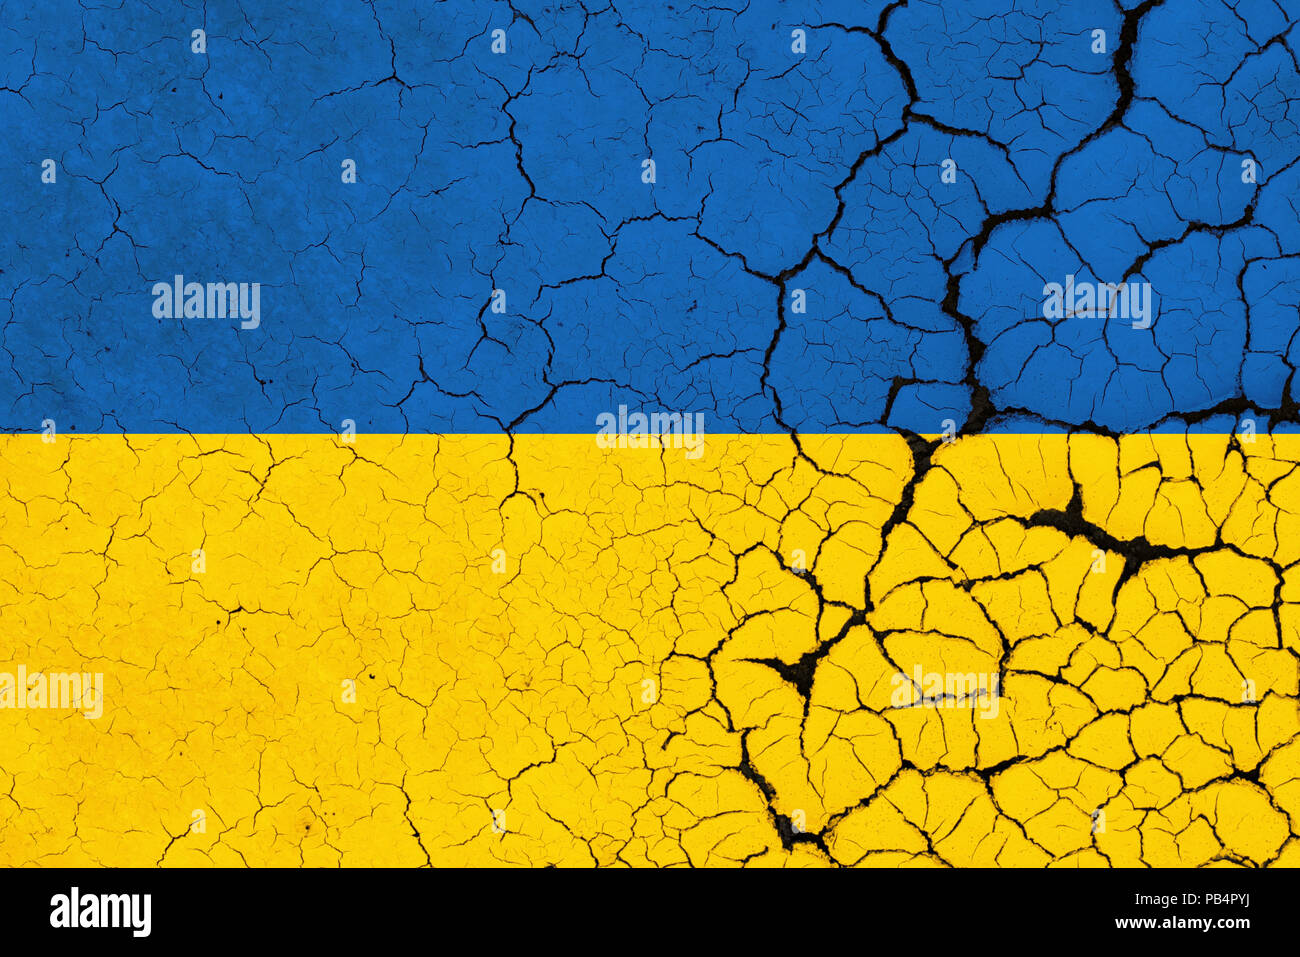 A Cracked And Fragile Ukrainian Flag Stock Photo